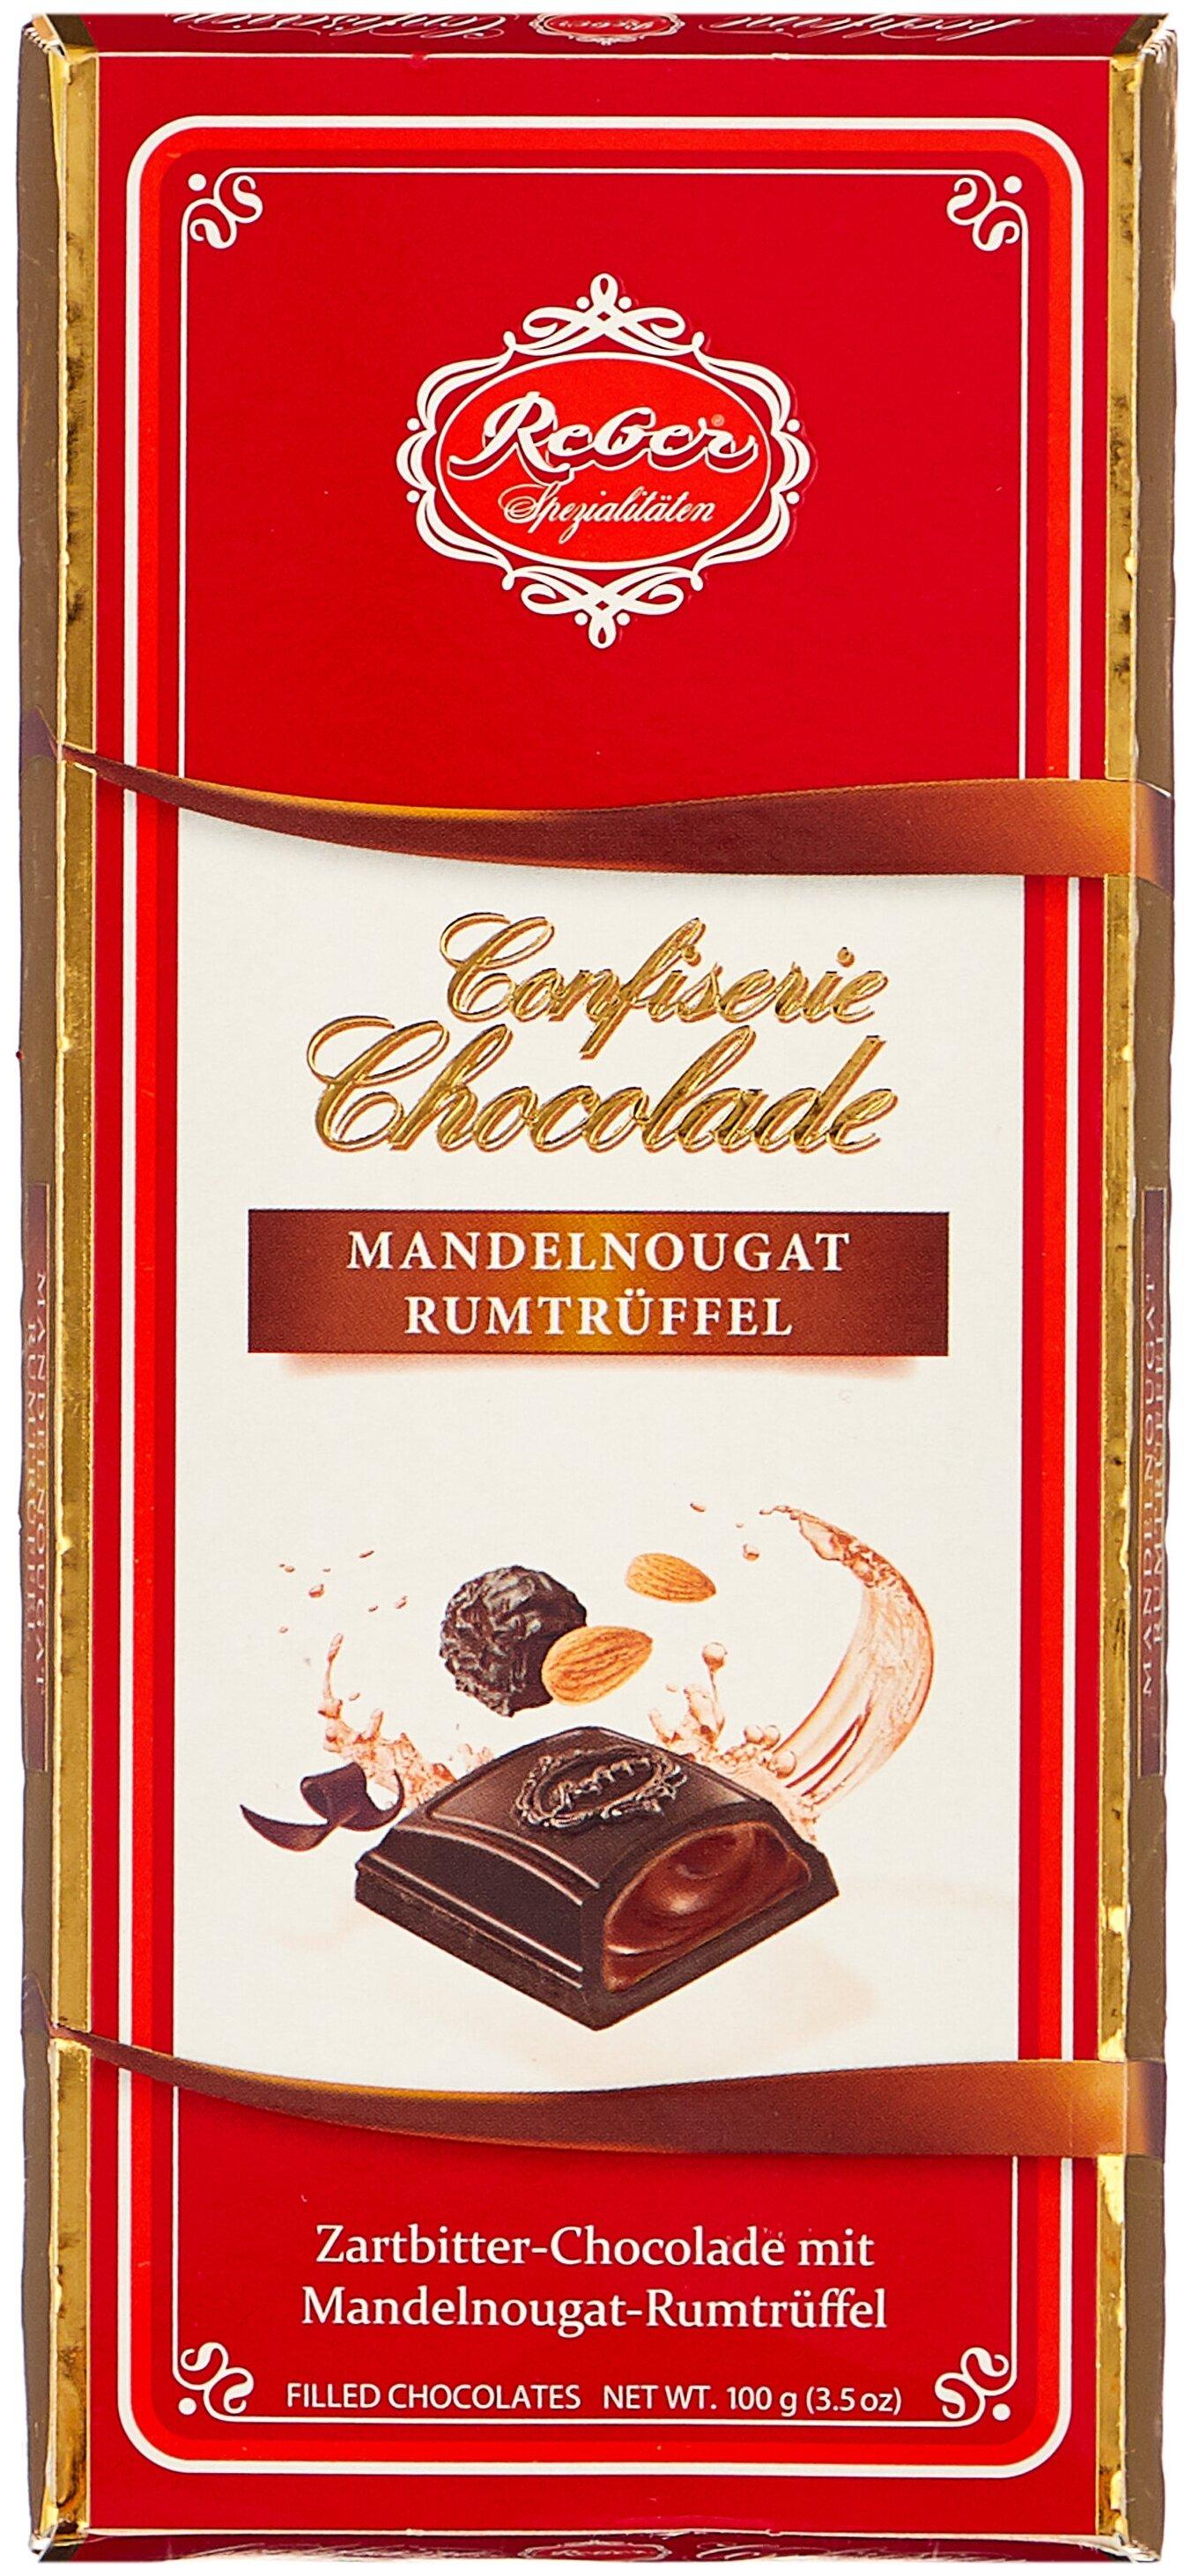 Шоколад Reber Almond Praline-Rum Truffle горький с трюфильной начинкой из миндаля и рома, 100 гр., картон